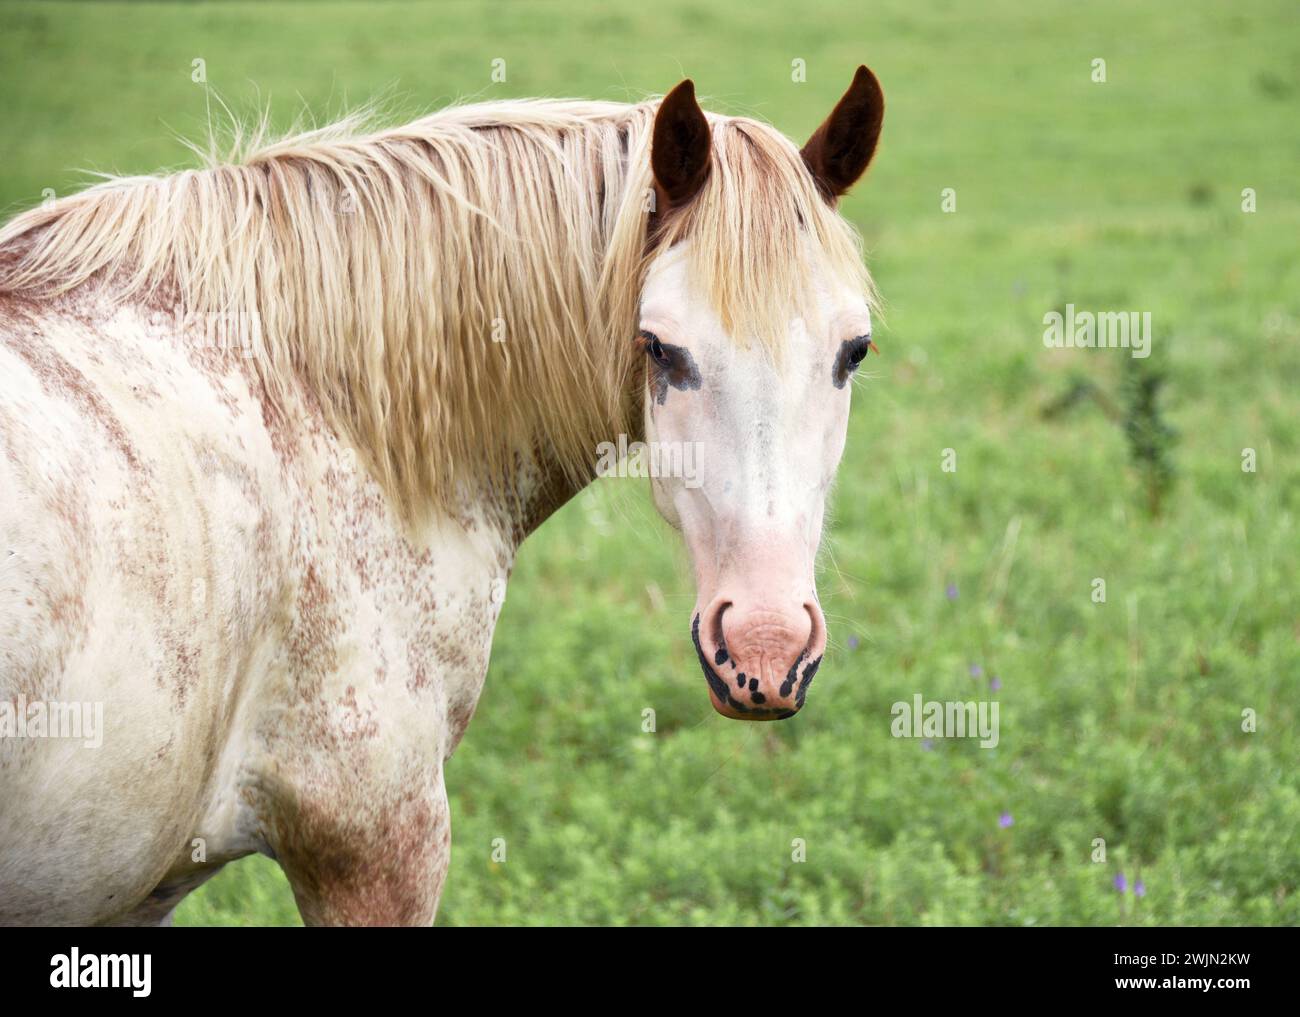 Curieux cheval Appaloosa se tourne pour regarder. Il est blanc avec des taches brunes et a un visage blanc. Il est dans un pré vert. Banque D'Images